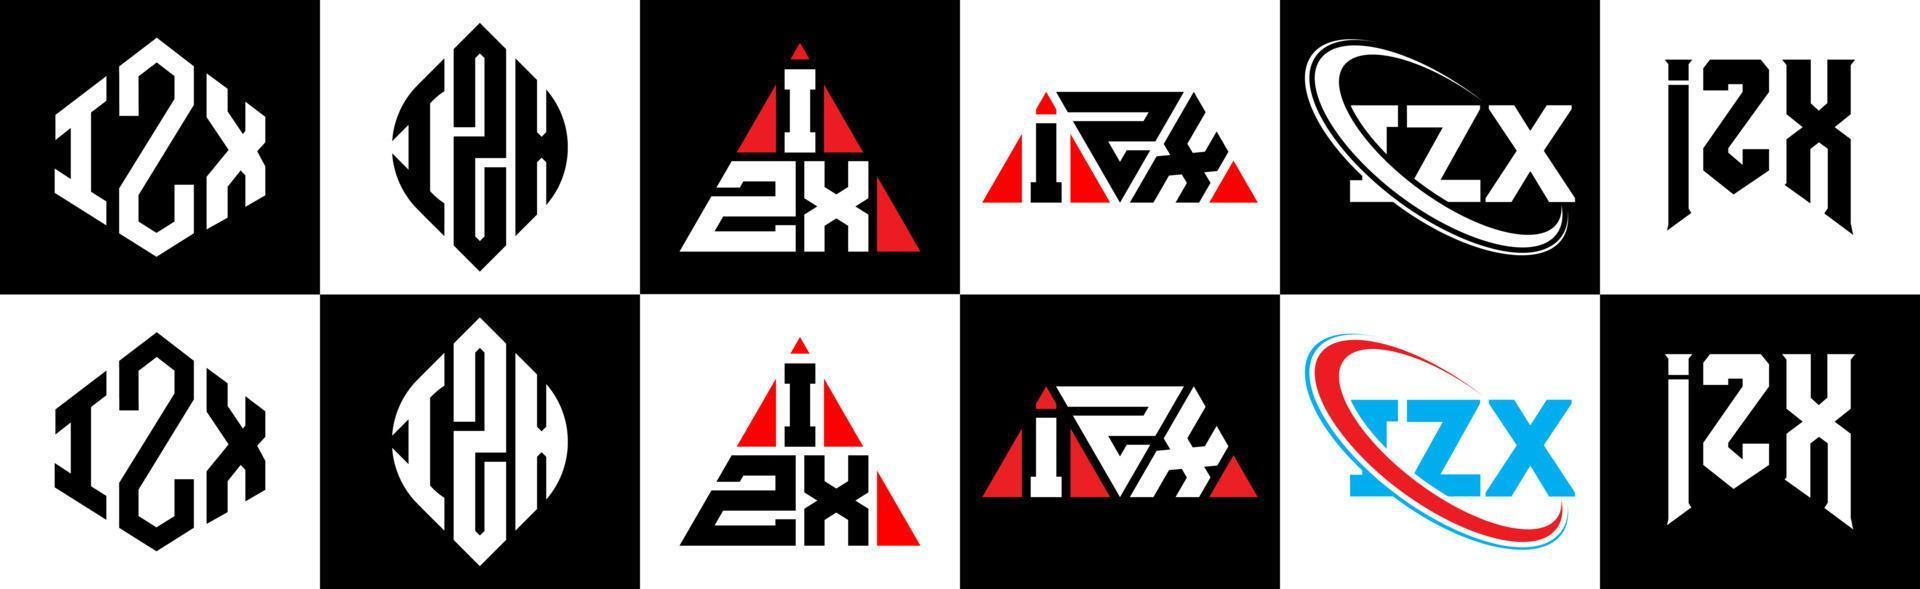 izx lettera logo design nel sei stile. izx poligono, cerchio, triangolo, esagono, piatto e semplice stile con nero e bianca colore variazione lettera logo impostato nel uno tavola da disegno. izx minimalista e classico logo vettore